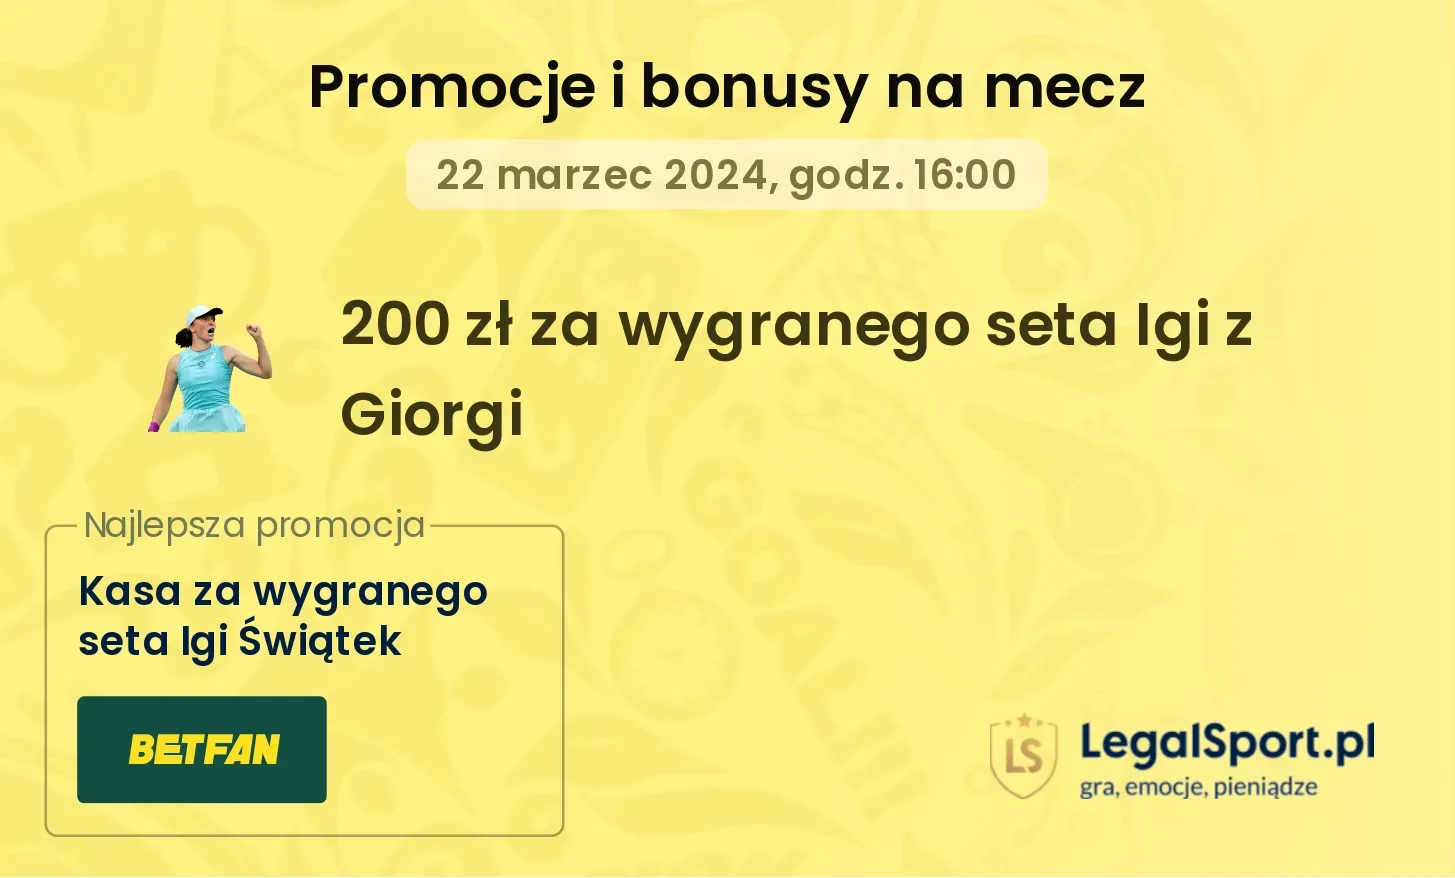 200 zł za wygranego seta Igi z Giorgi w BETFAN (22.03.2024)